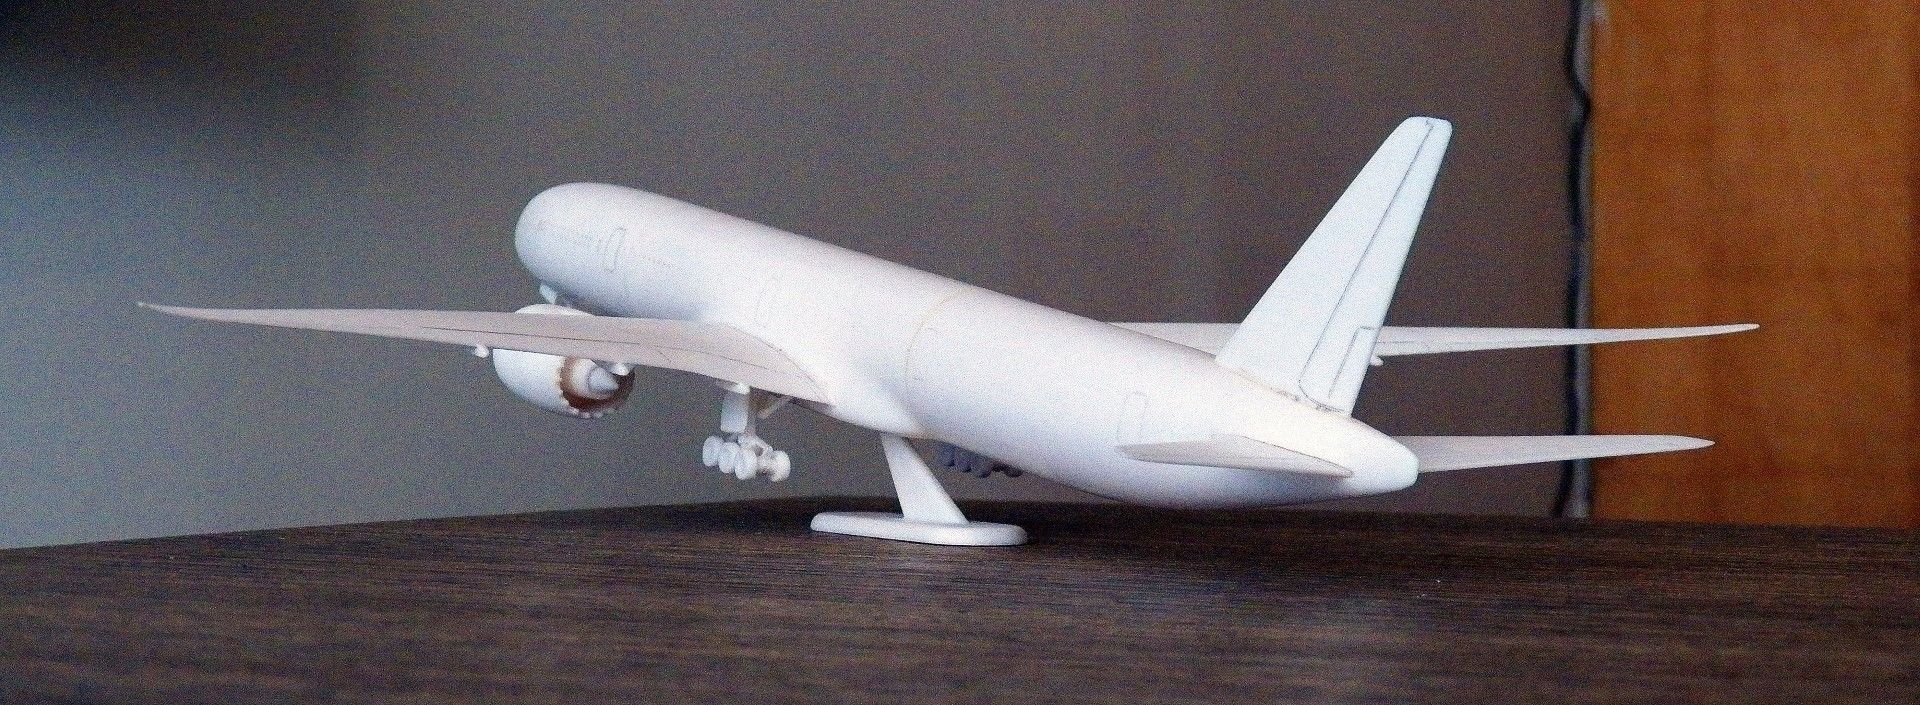 100_0079 (Large).jpg Télécharger fichier STL Modèle réduit d'avion Boeing 777X • Modèle imprimable en 3D, guaro3d